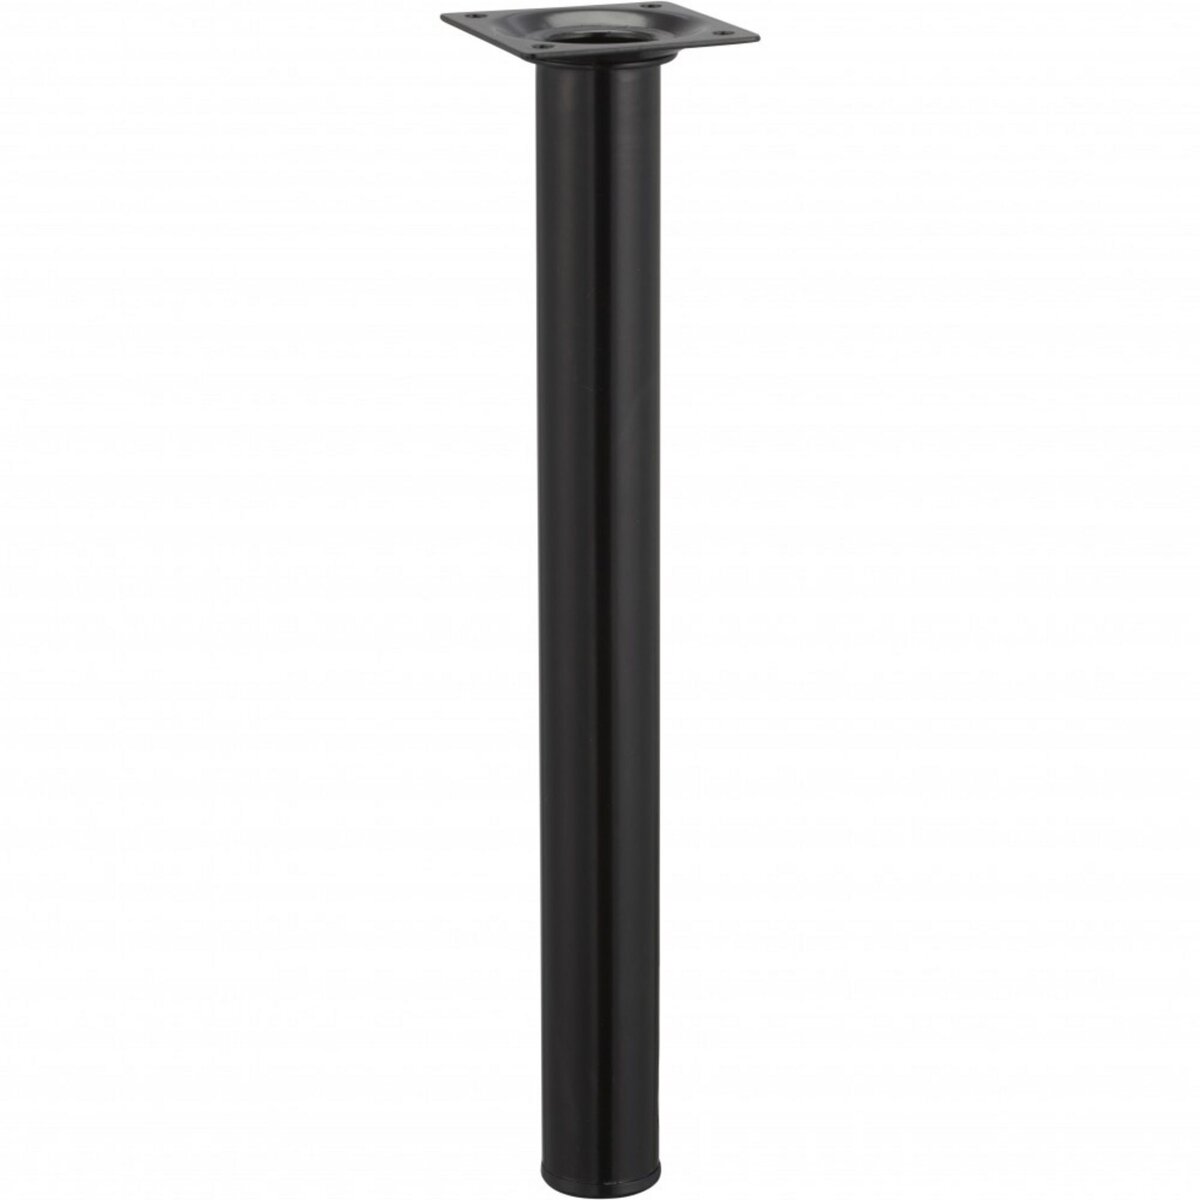 CENTRALE BRICO Pied de table basse cylindrique fixe acier époxy noir, 30 cm